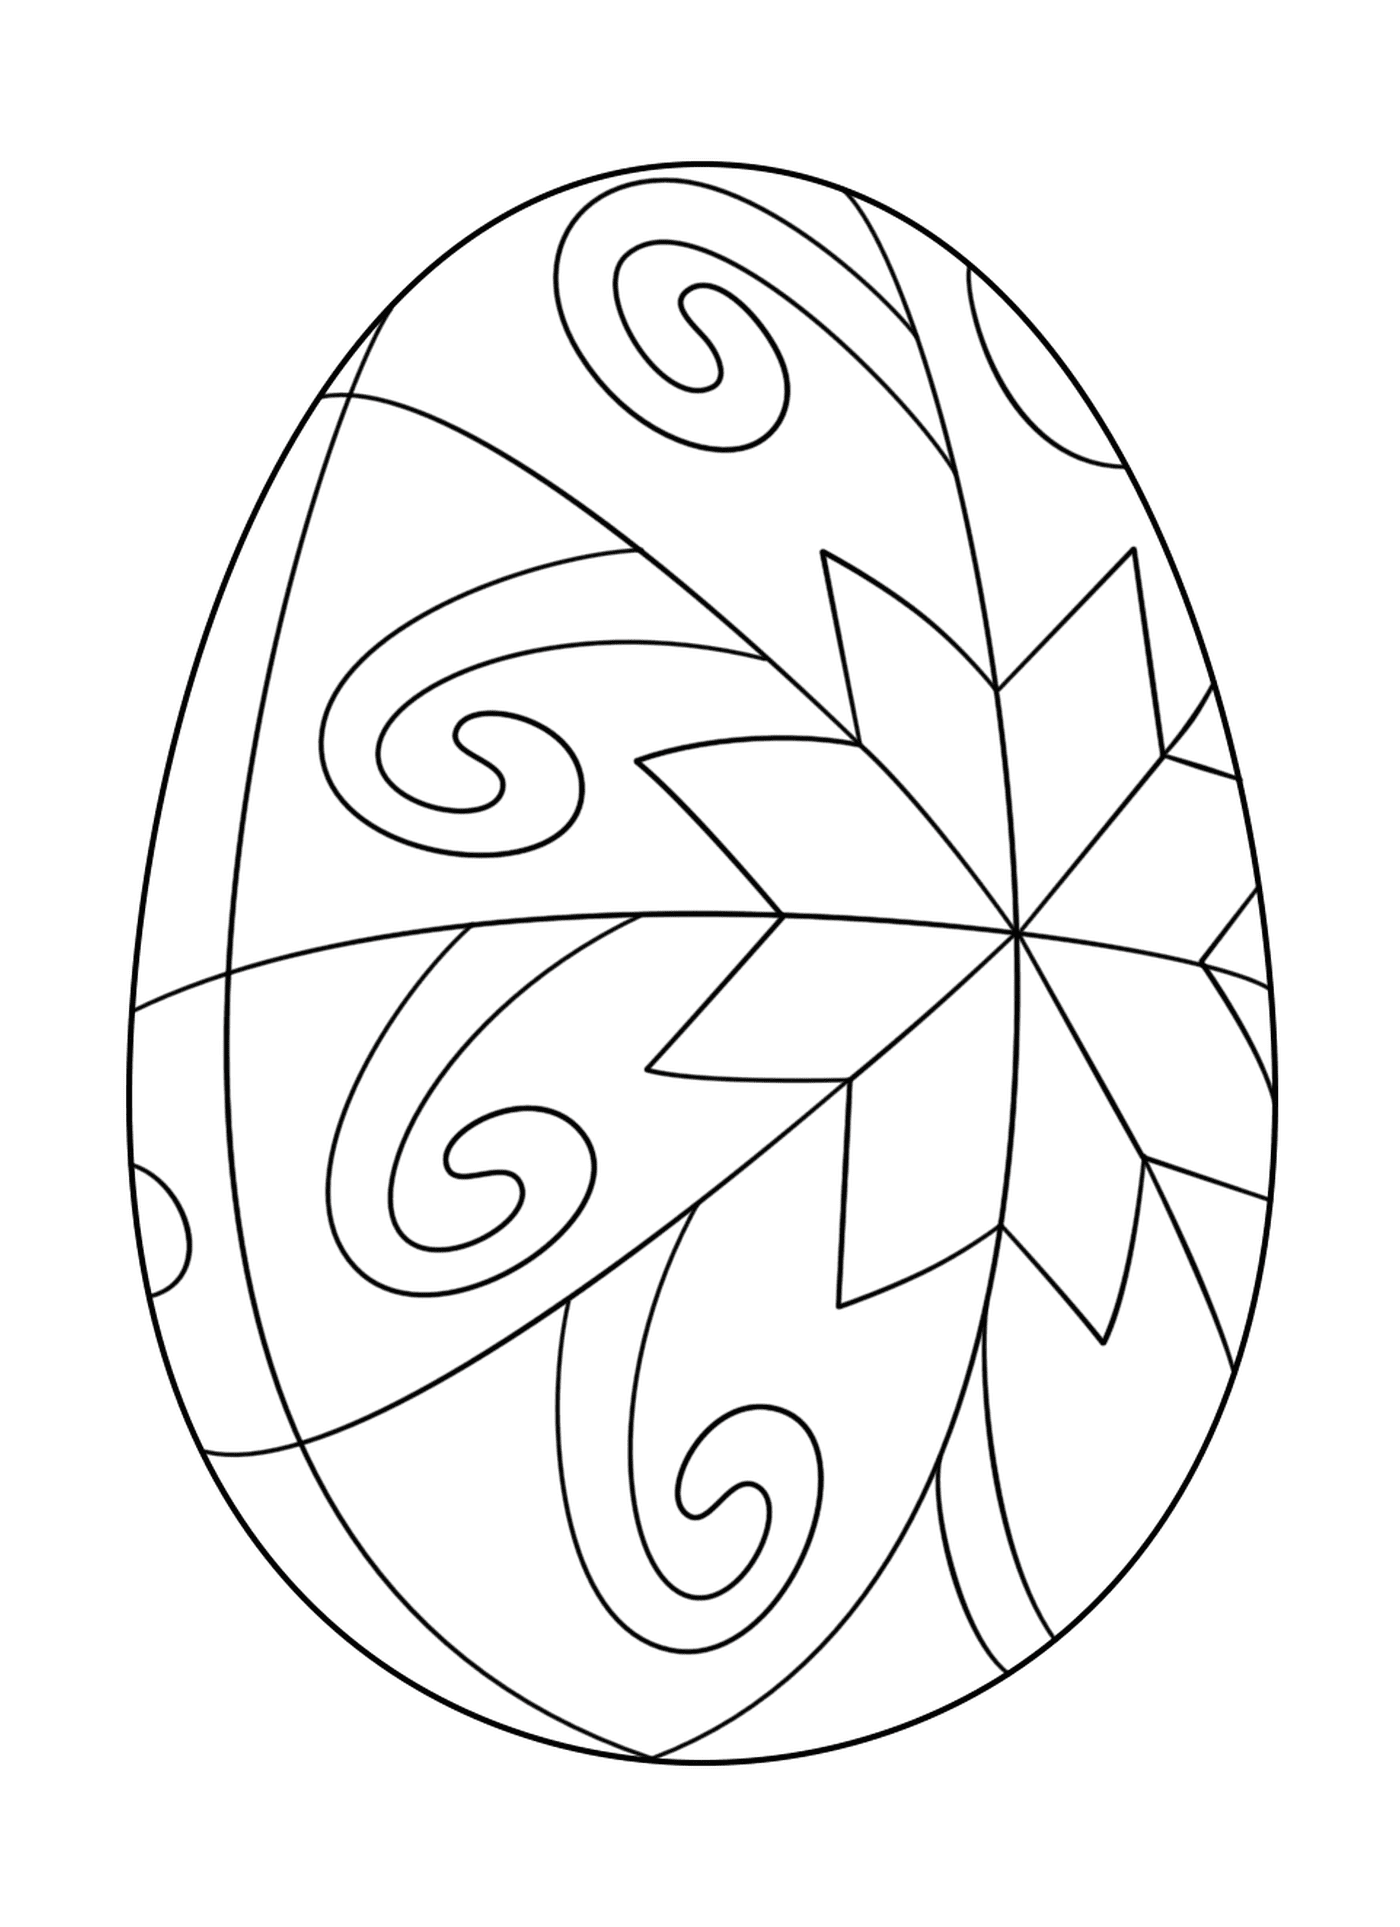  Пасхальное яйцо со звездным мотивом, украшенное яйцом 